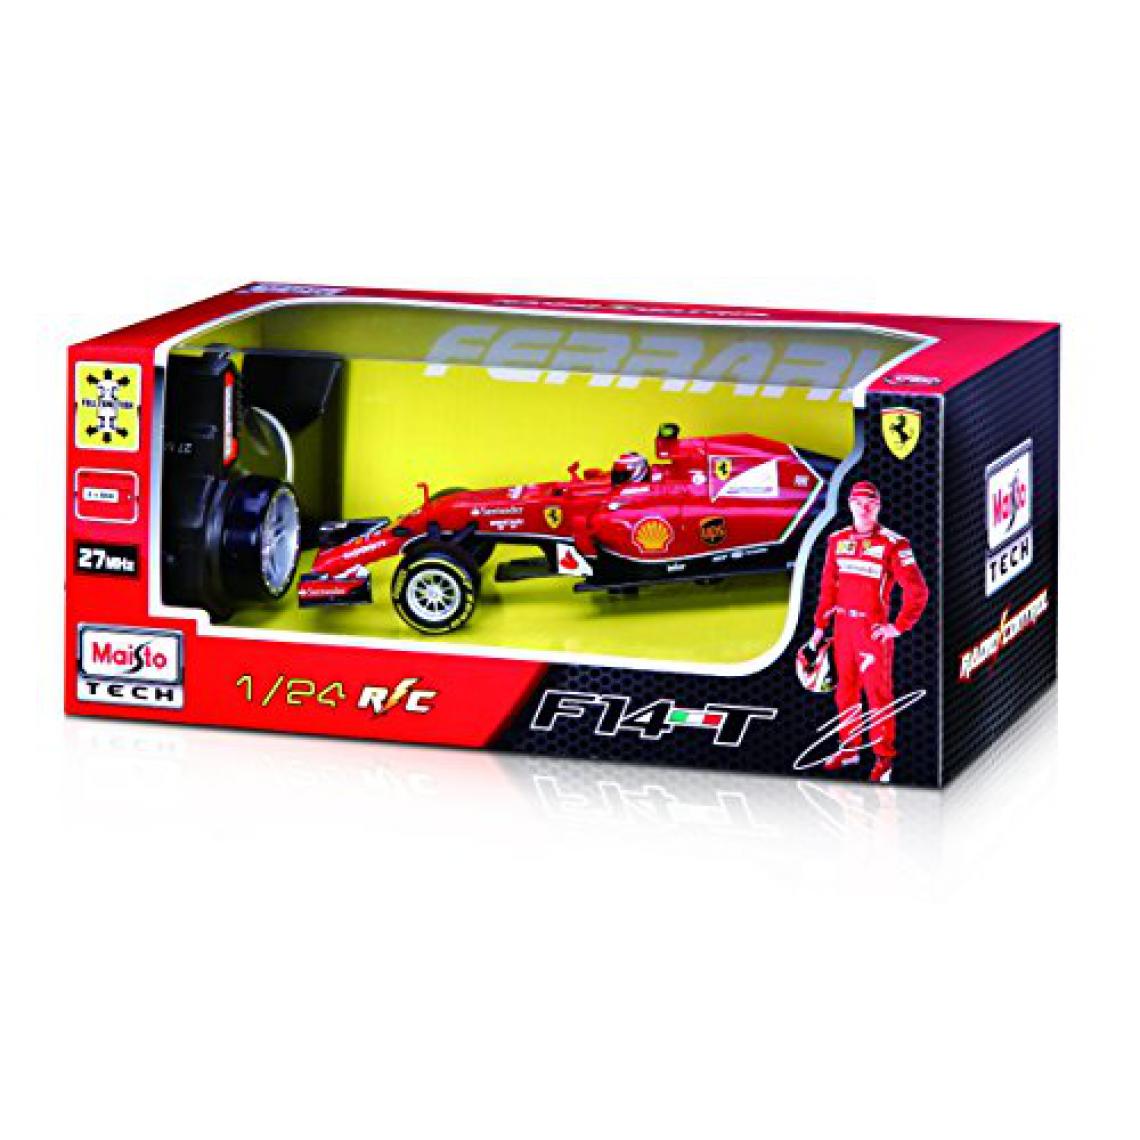 Maisto - Maisto R / c 1:24 2014 véhicule radiocommandé Ferrari F14T (les styles peuvent varier) - Jouet électronique enfant